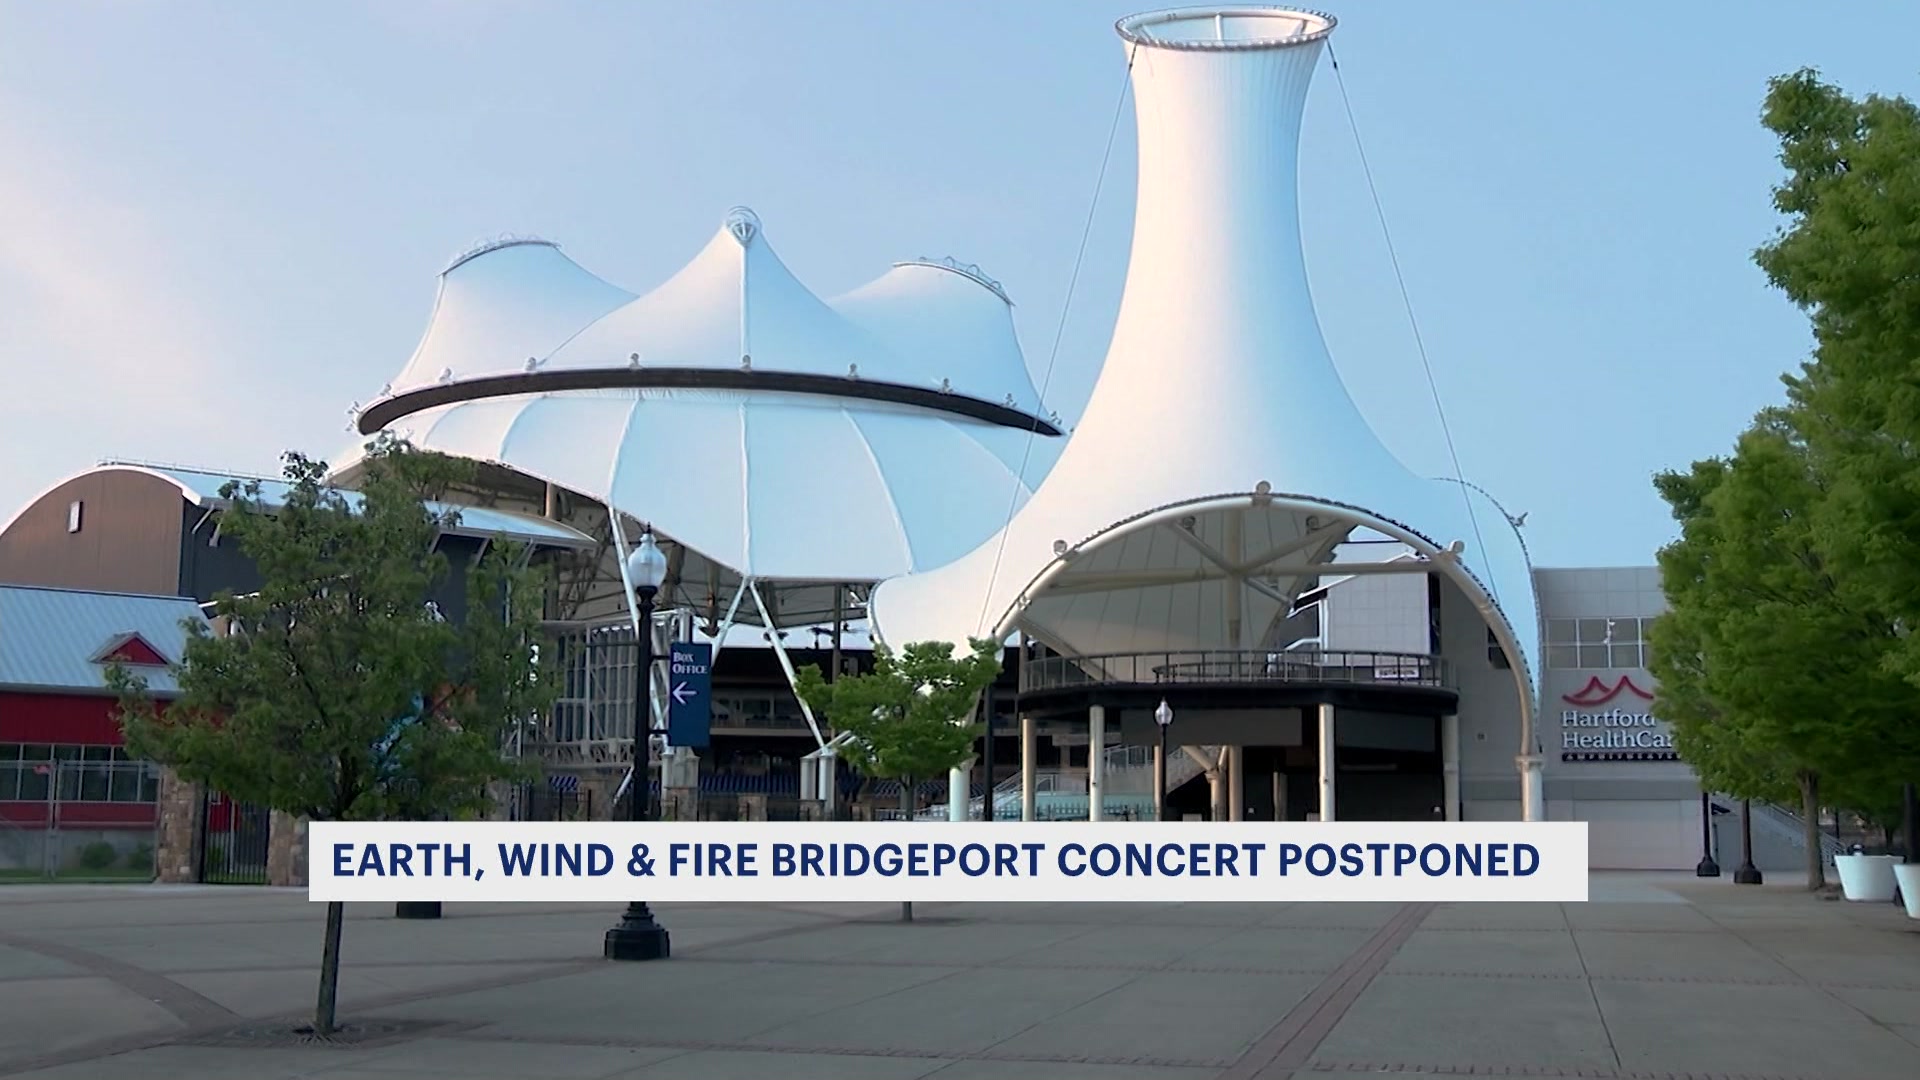 Derek Jeter hosting Earth, Wind & Fire concert in Bridgeport